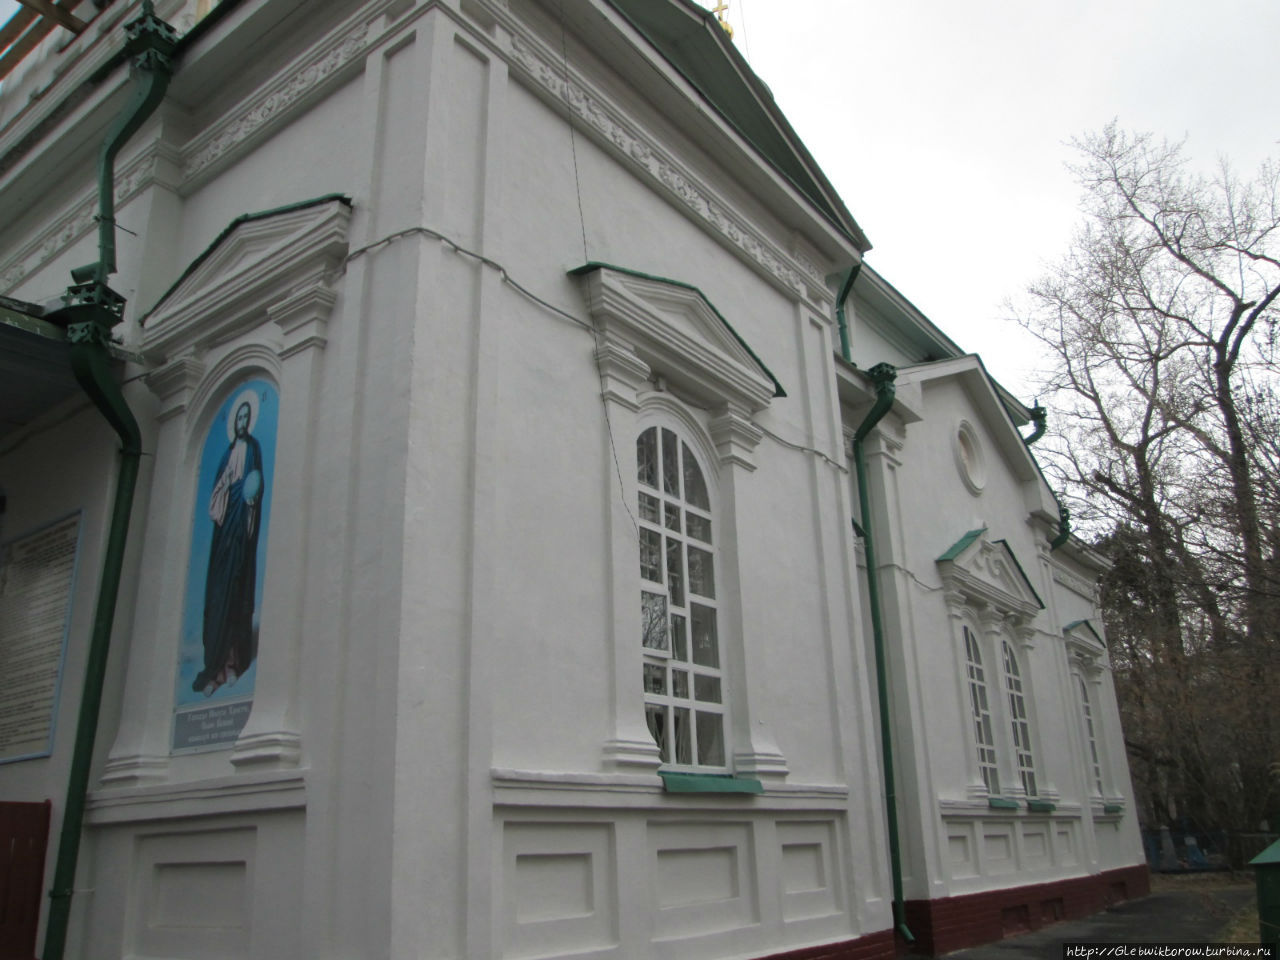 Трехсвятительская церковь Тюмень, Россия